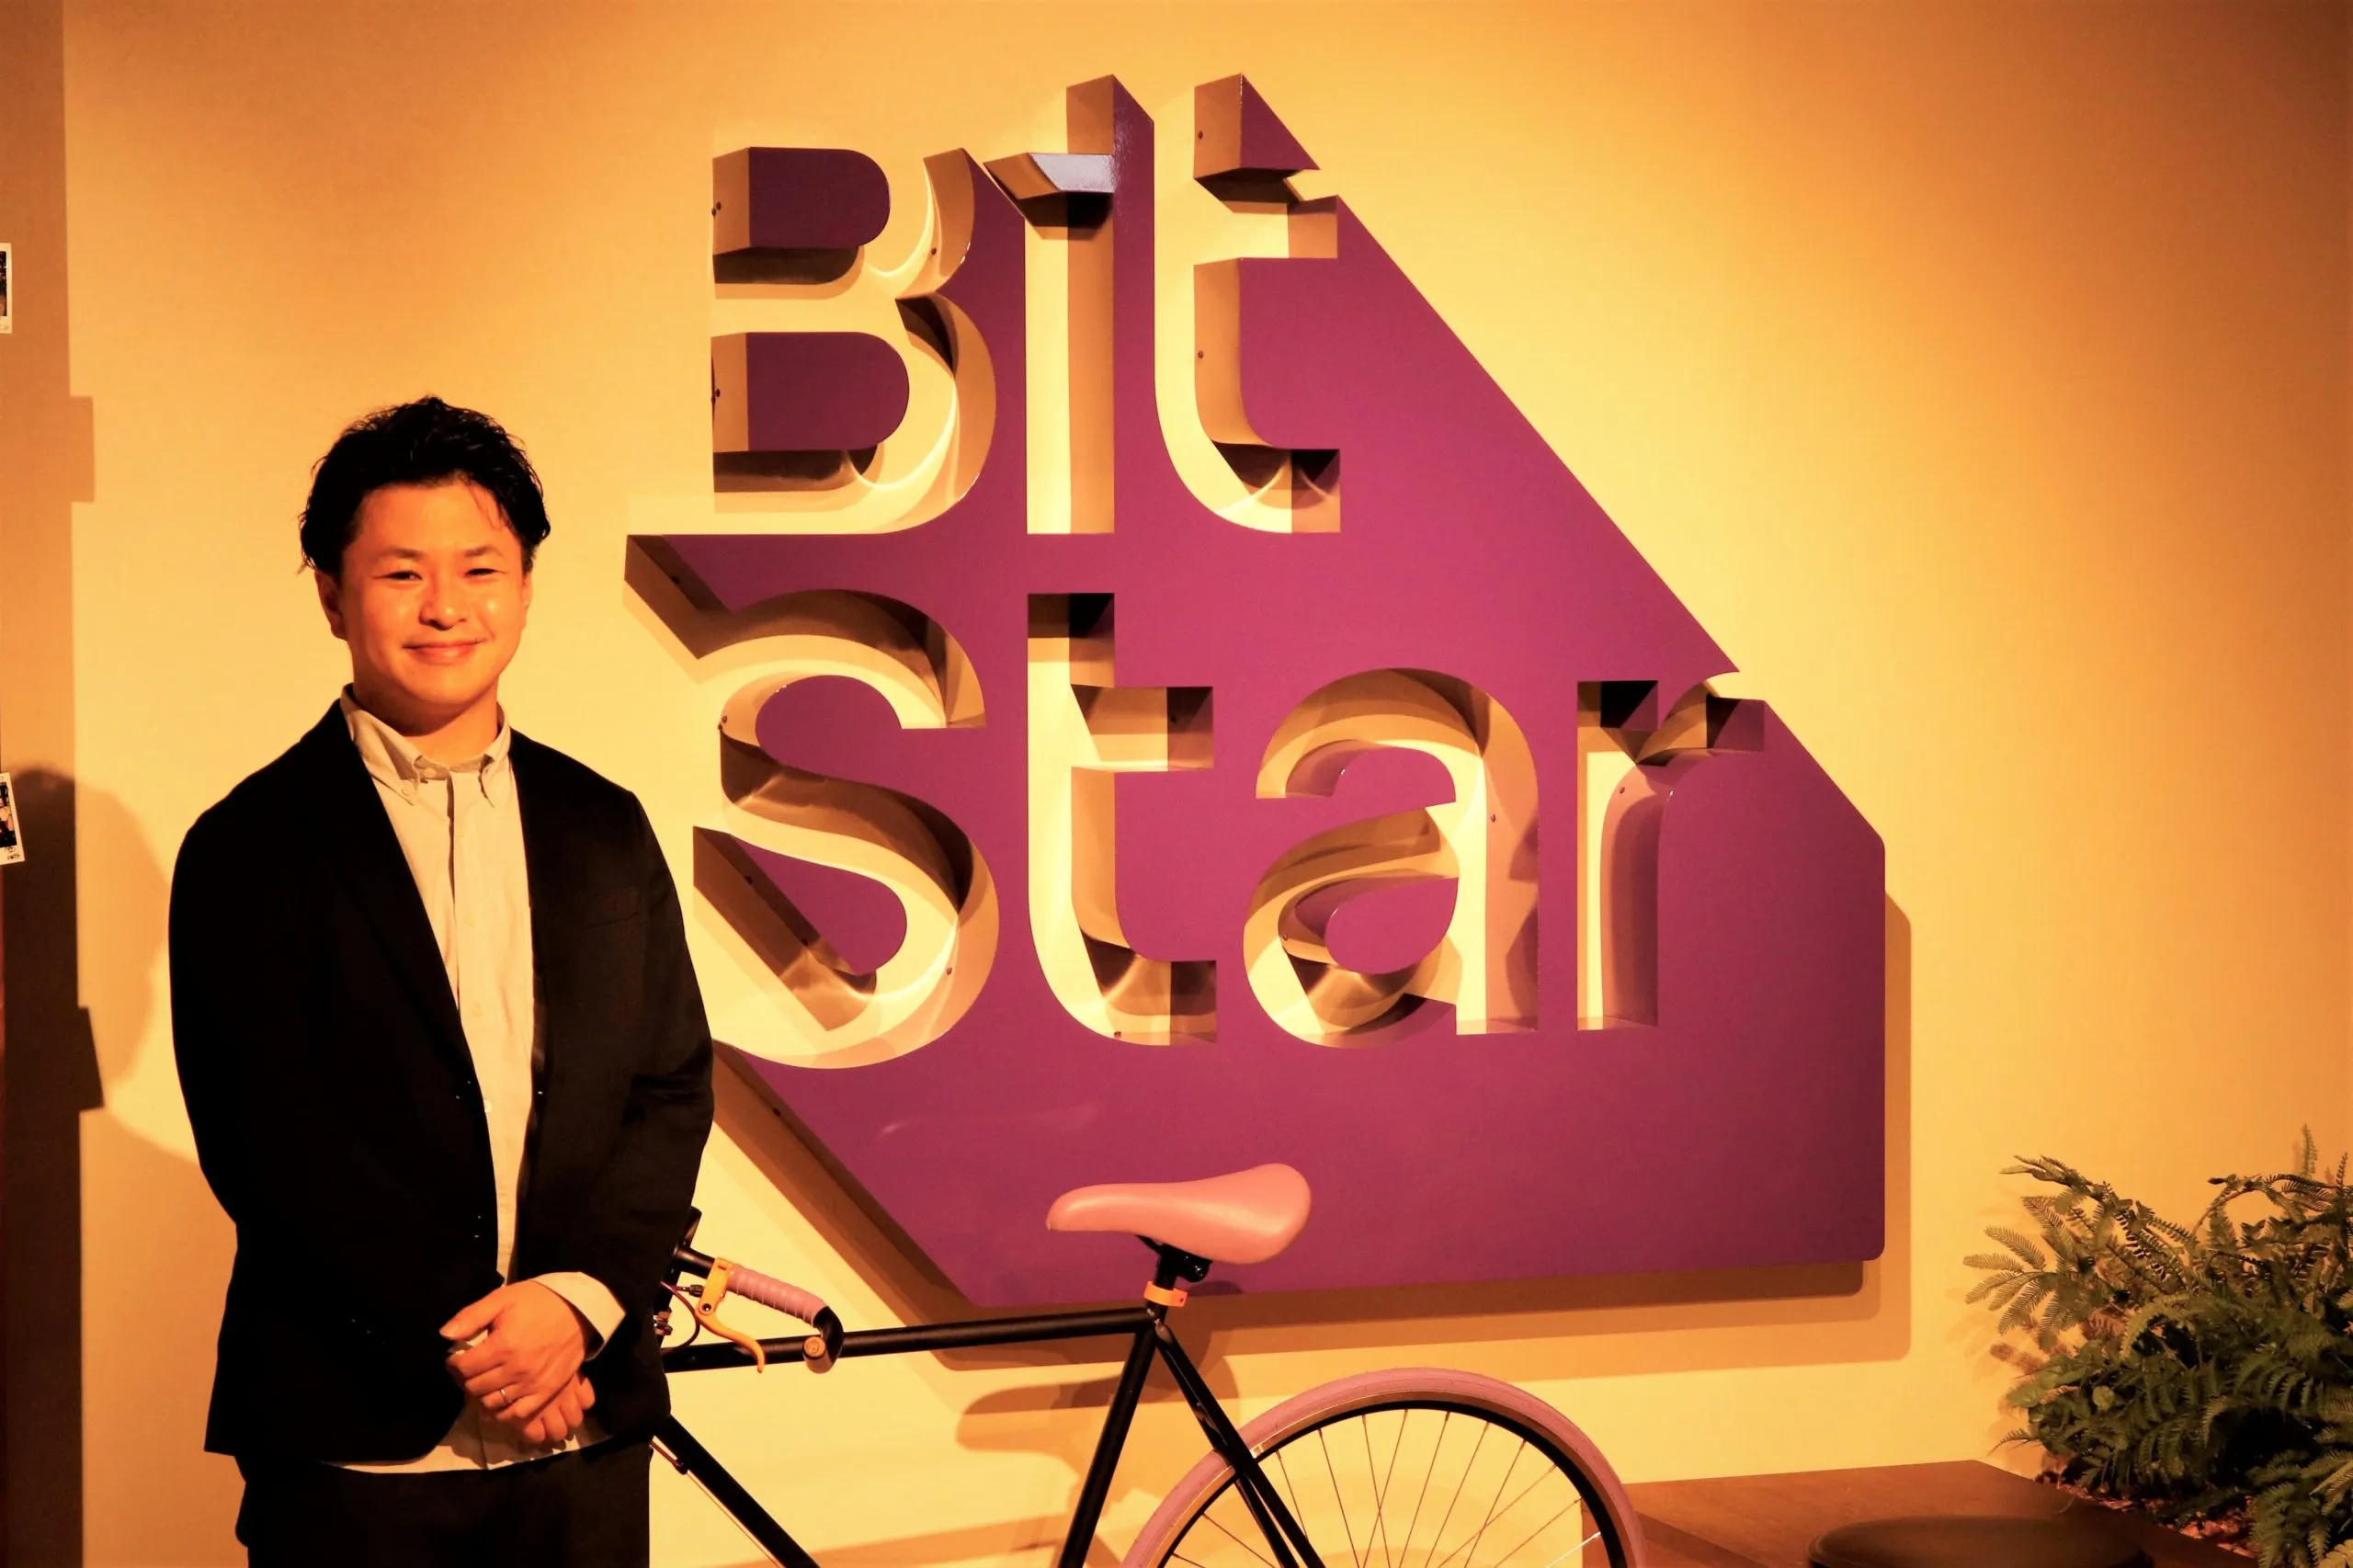 【提携社インタビュー】 株式会社BitStar様